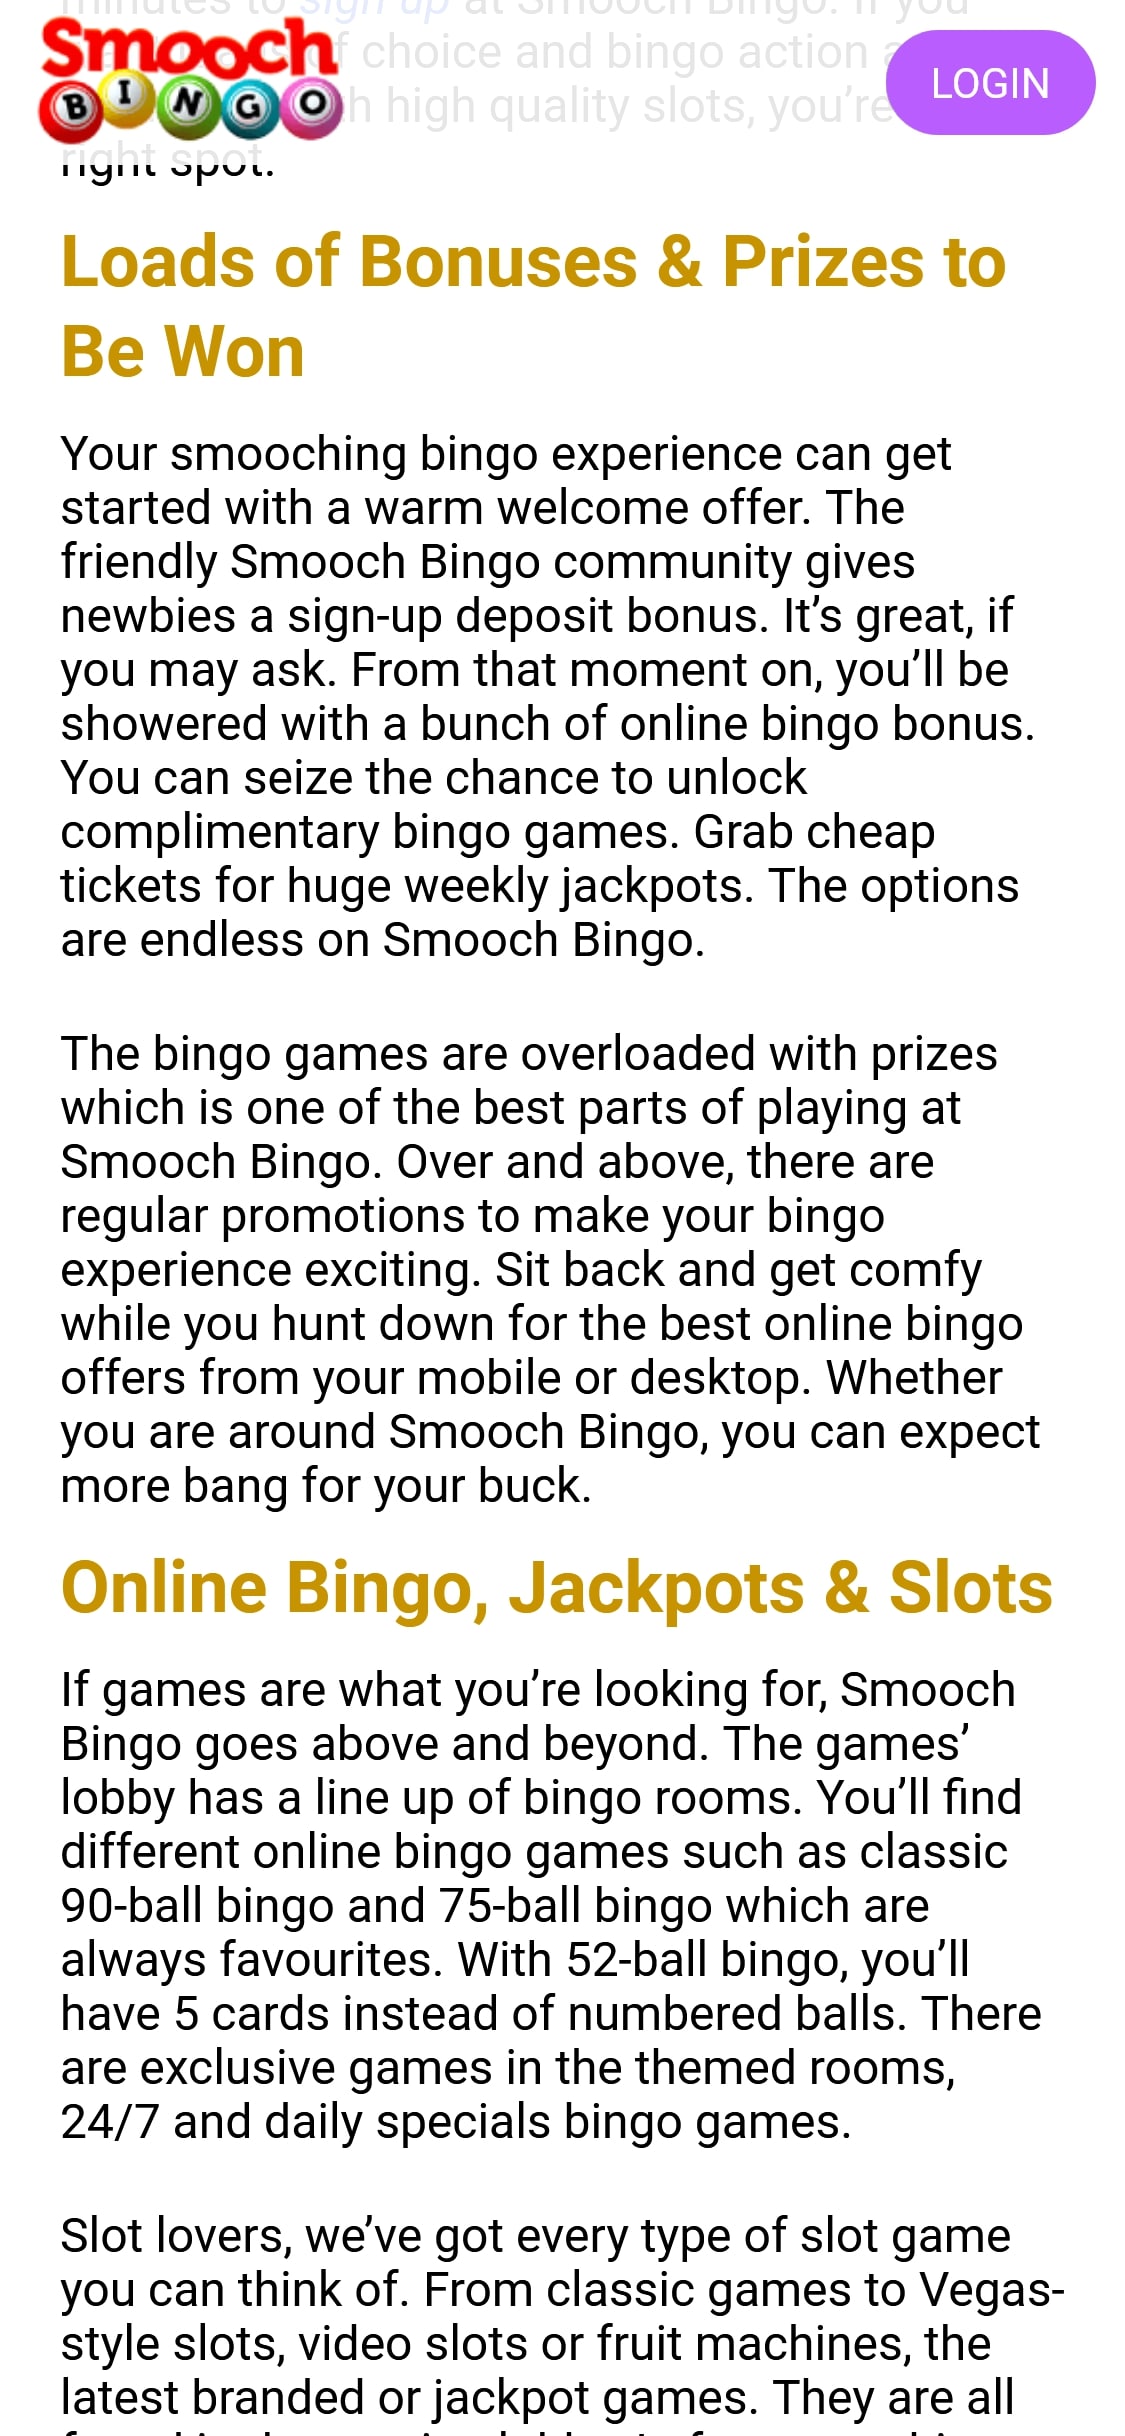 Smooch Bingo Casino Mobile No Deposit Bonus Review